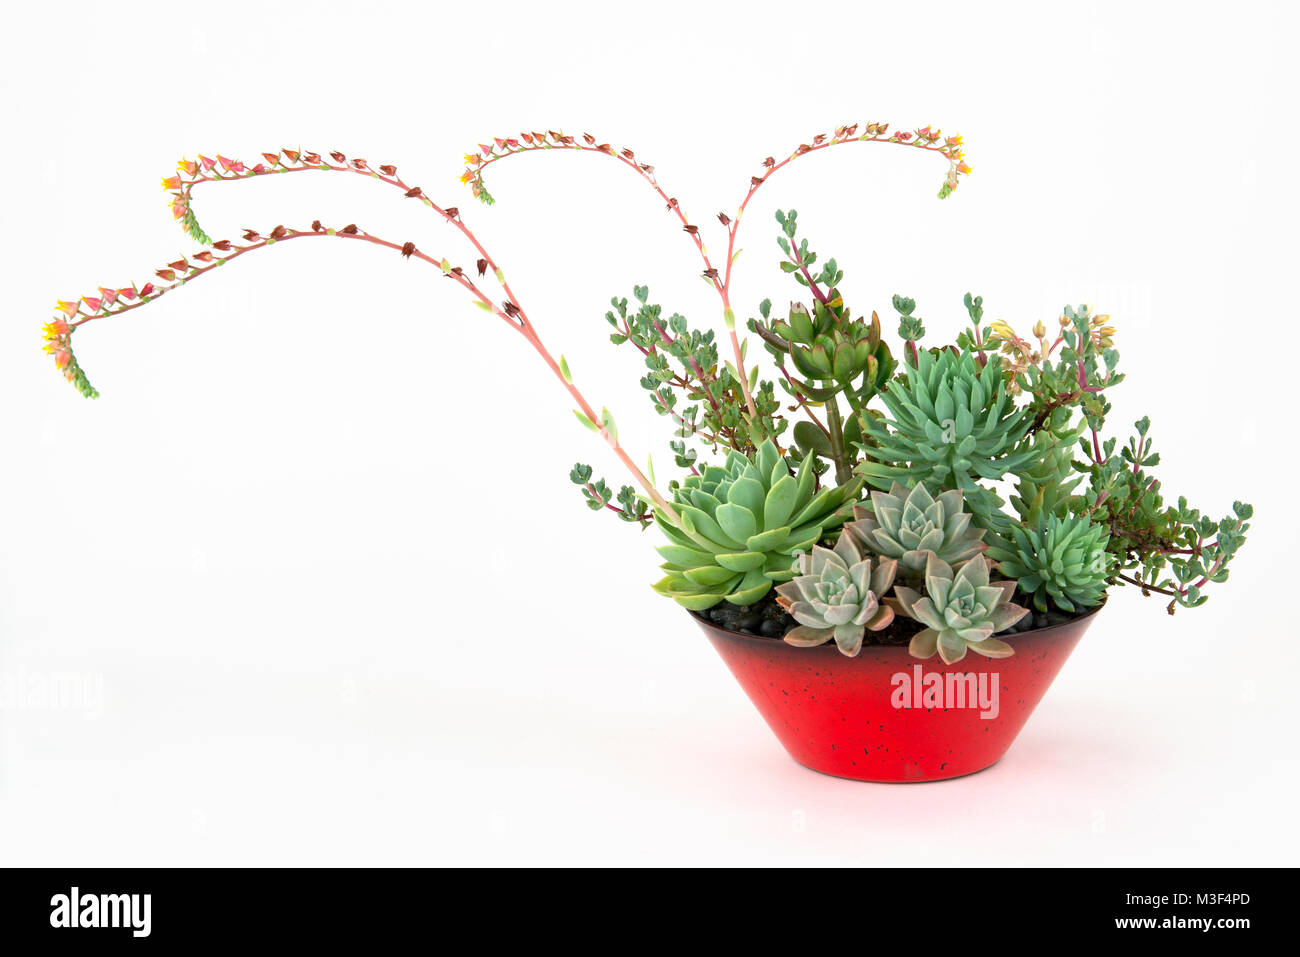 Arrangement spectaculaire d'un assortiment de plantes succulentes dans un pot de fleur rouge avec plusieurs coureurs de floraison, isolé sur blanc. Banque D'Images